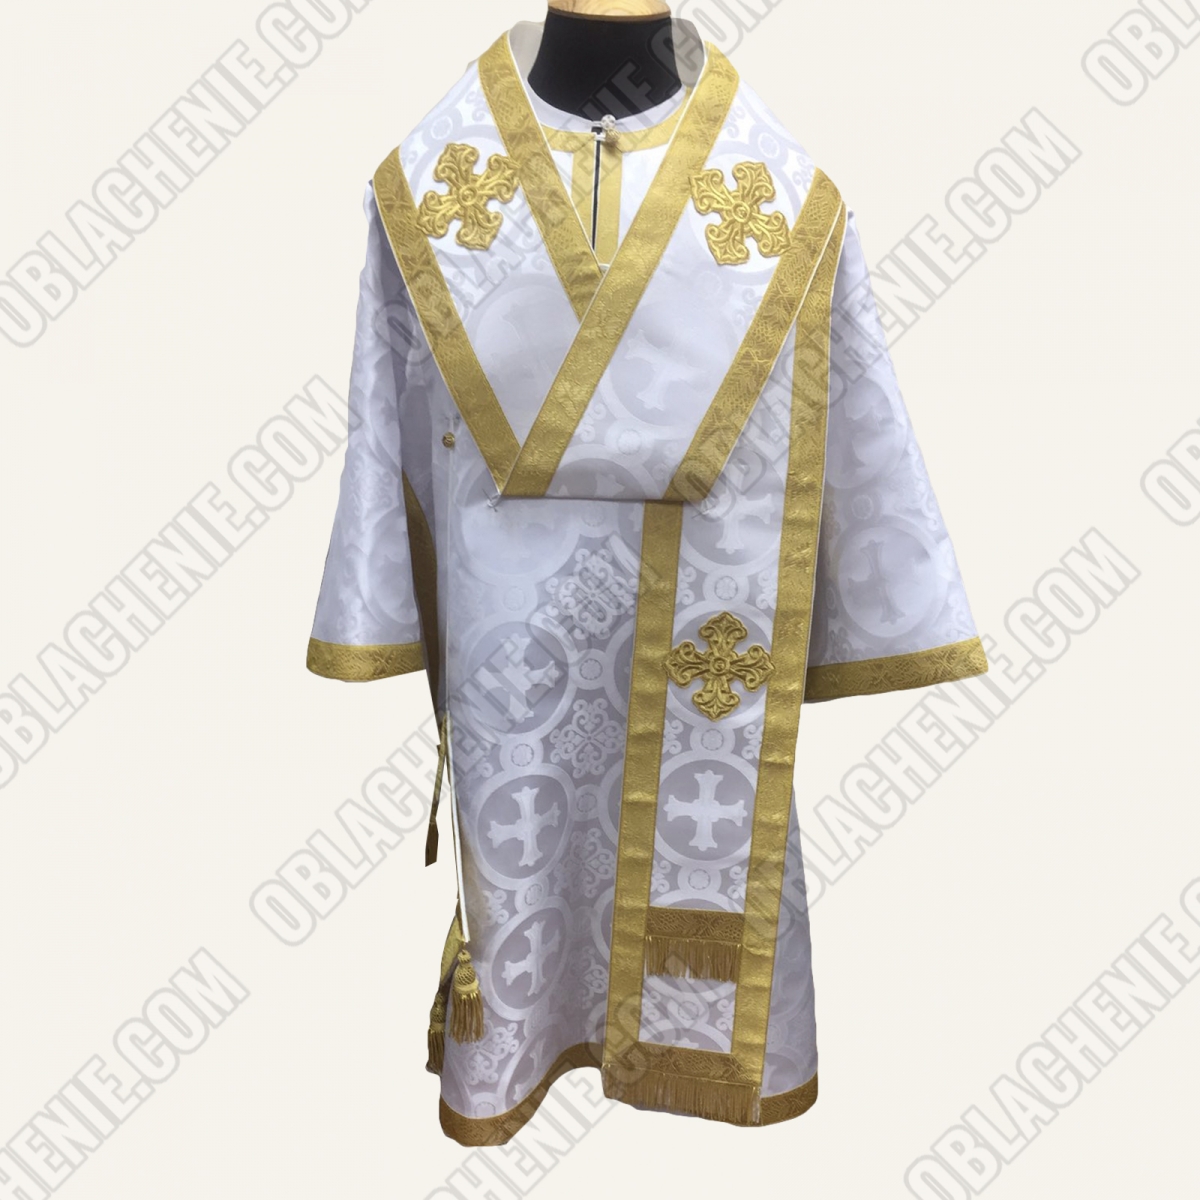 Bishop's vestments 11718